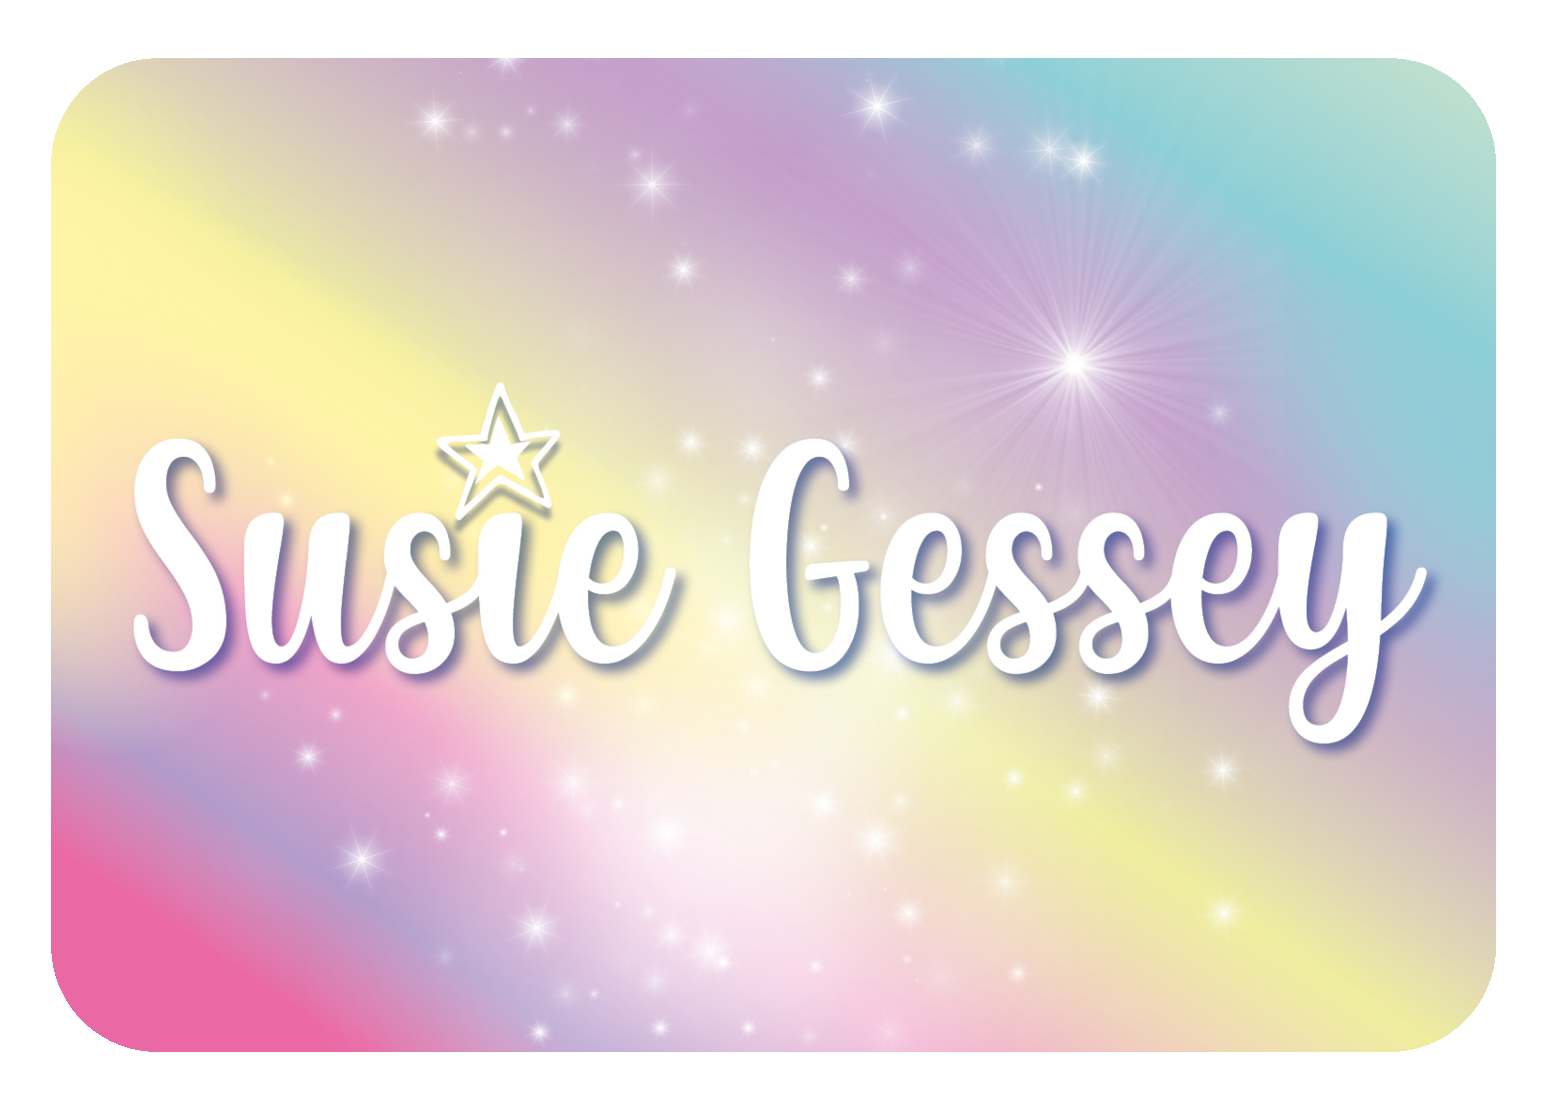 Susie Gessey logo